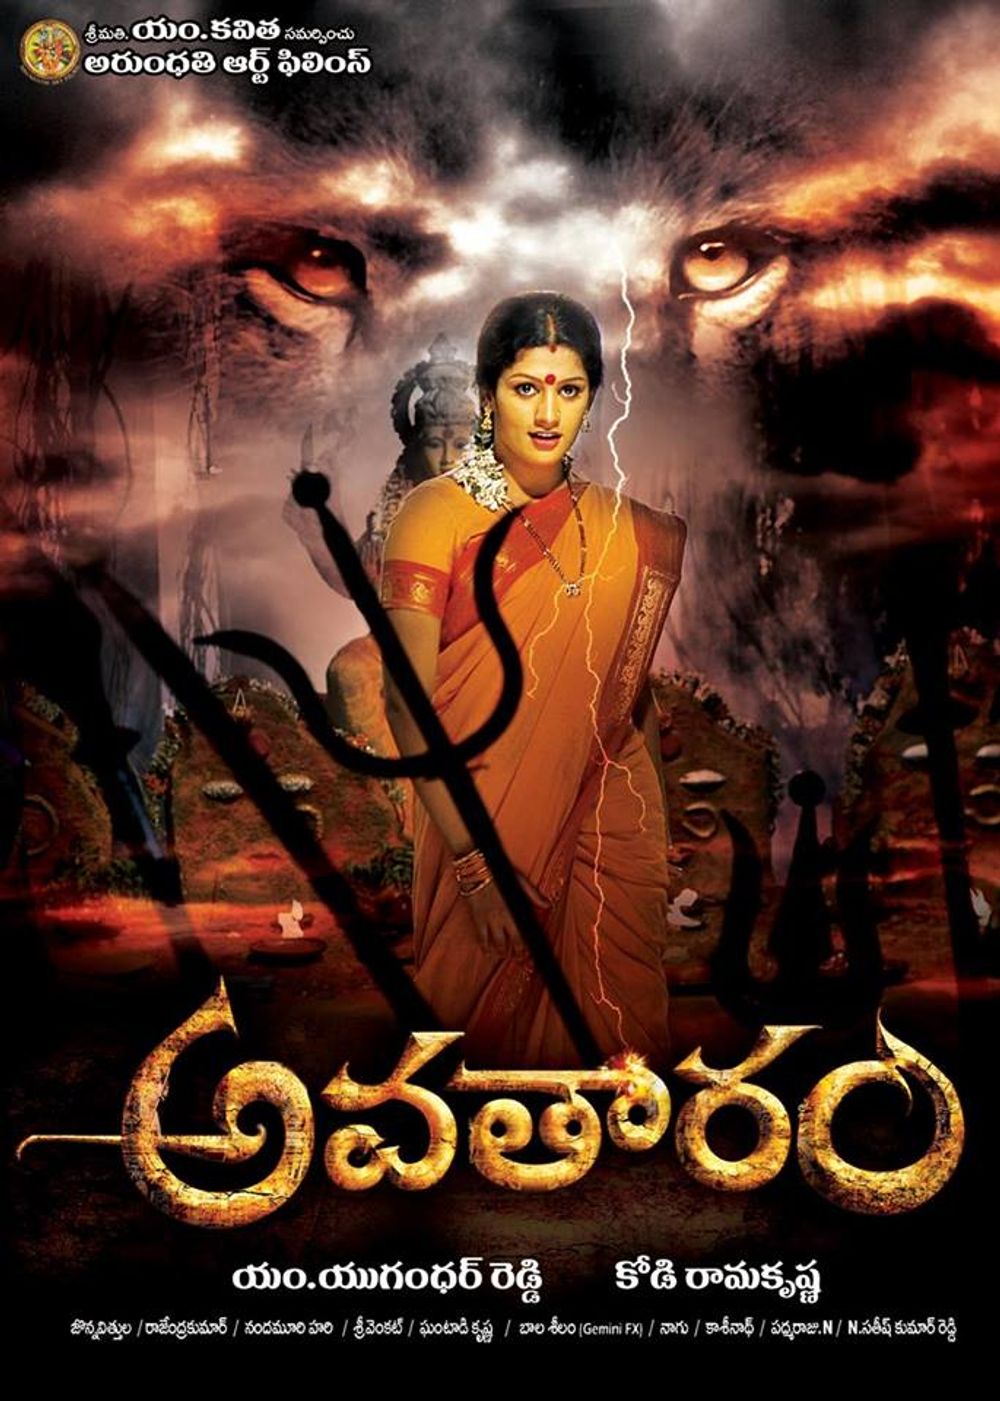 Avatharam (2014 Telugu film)